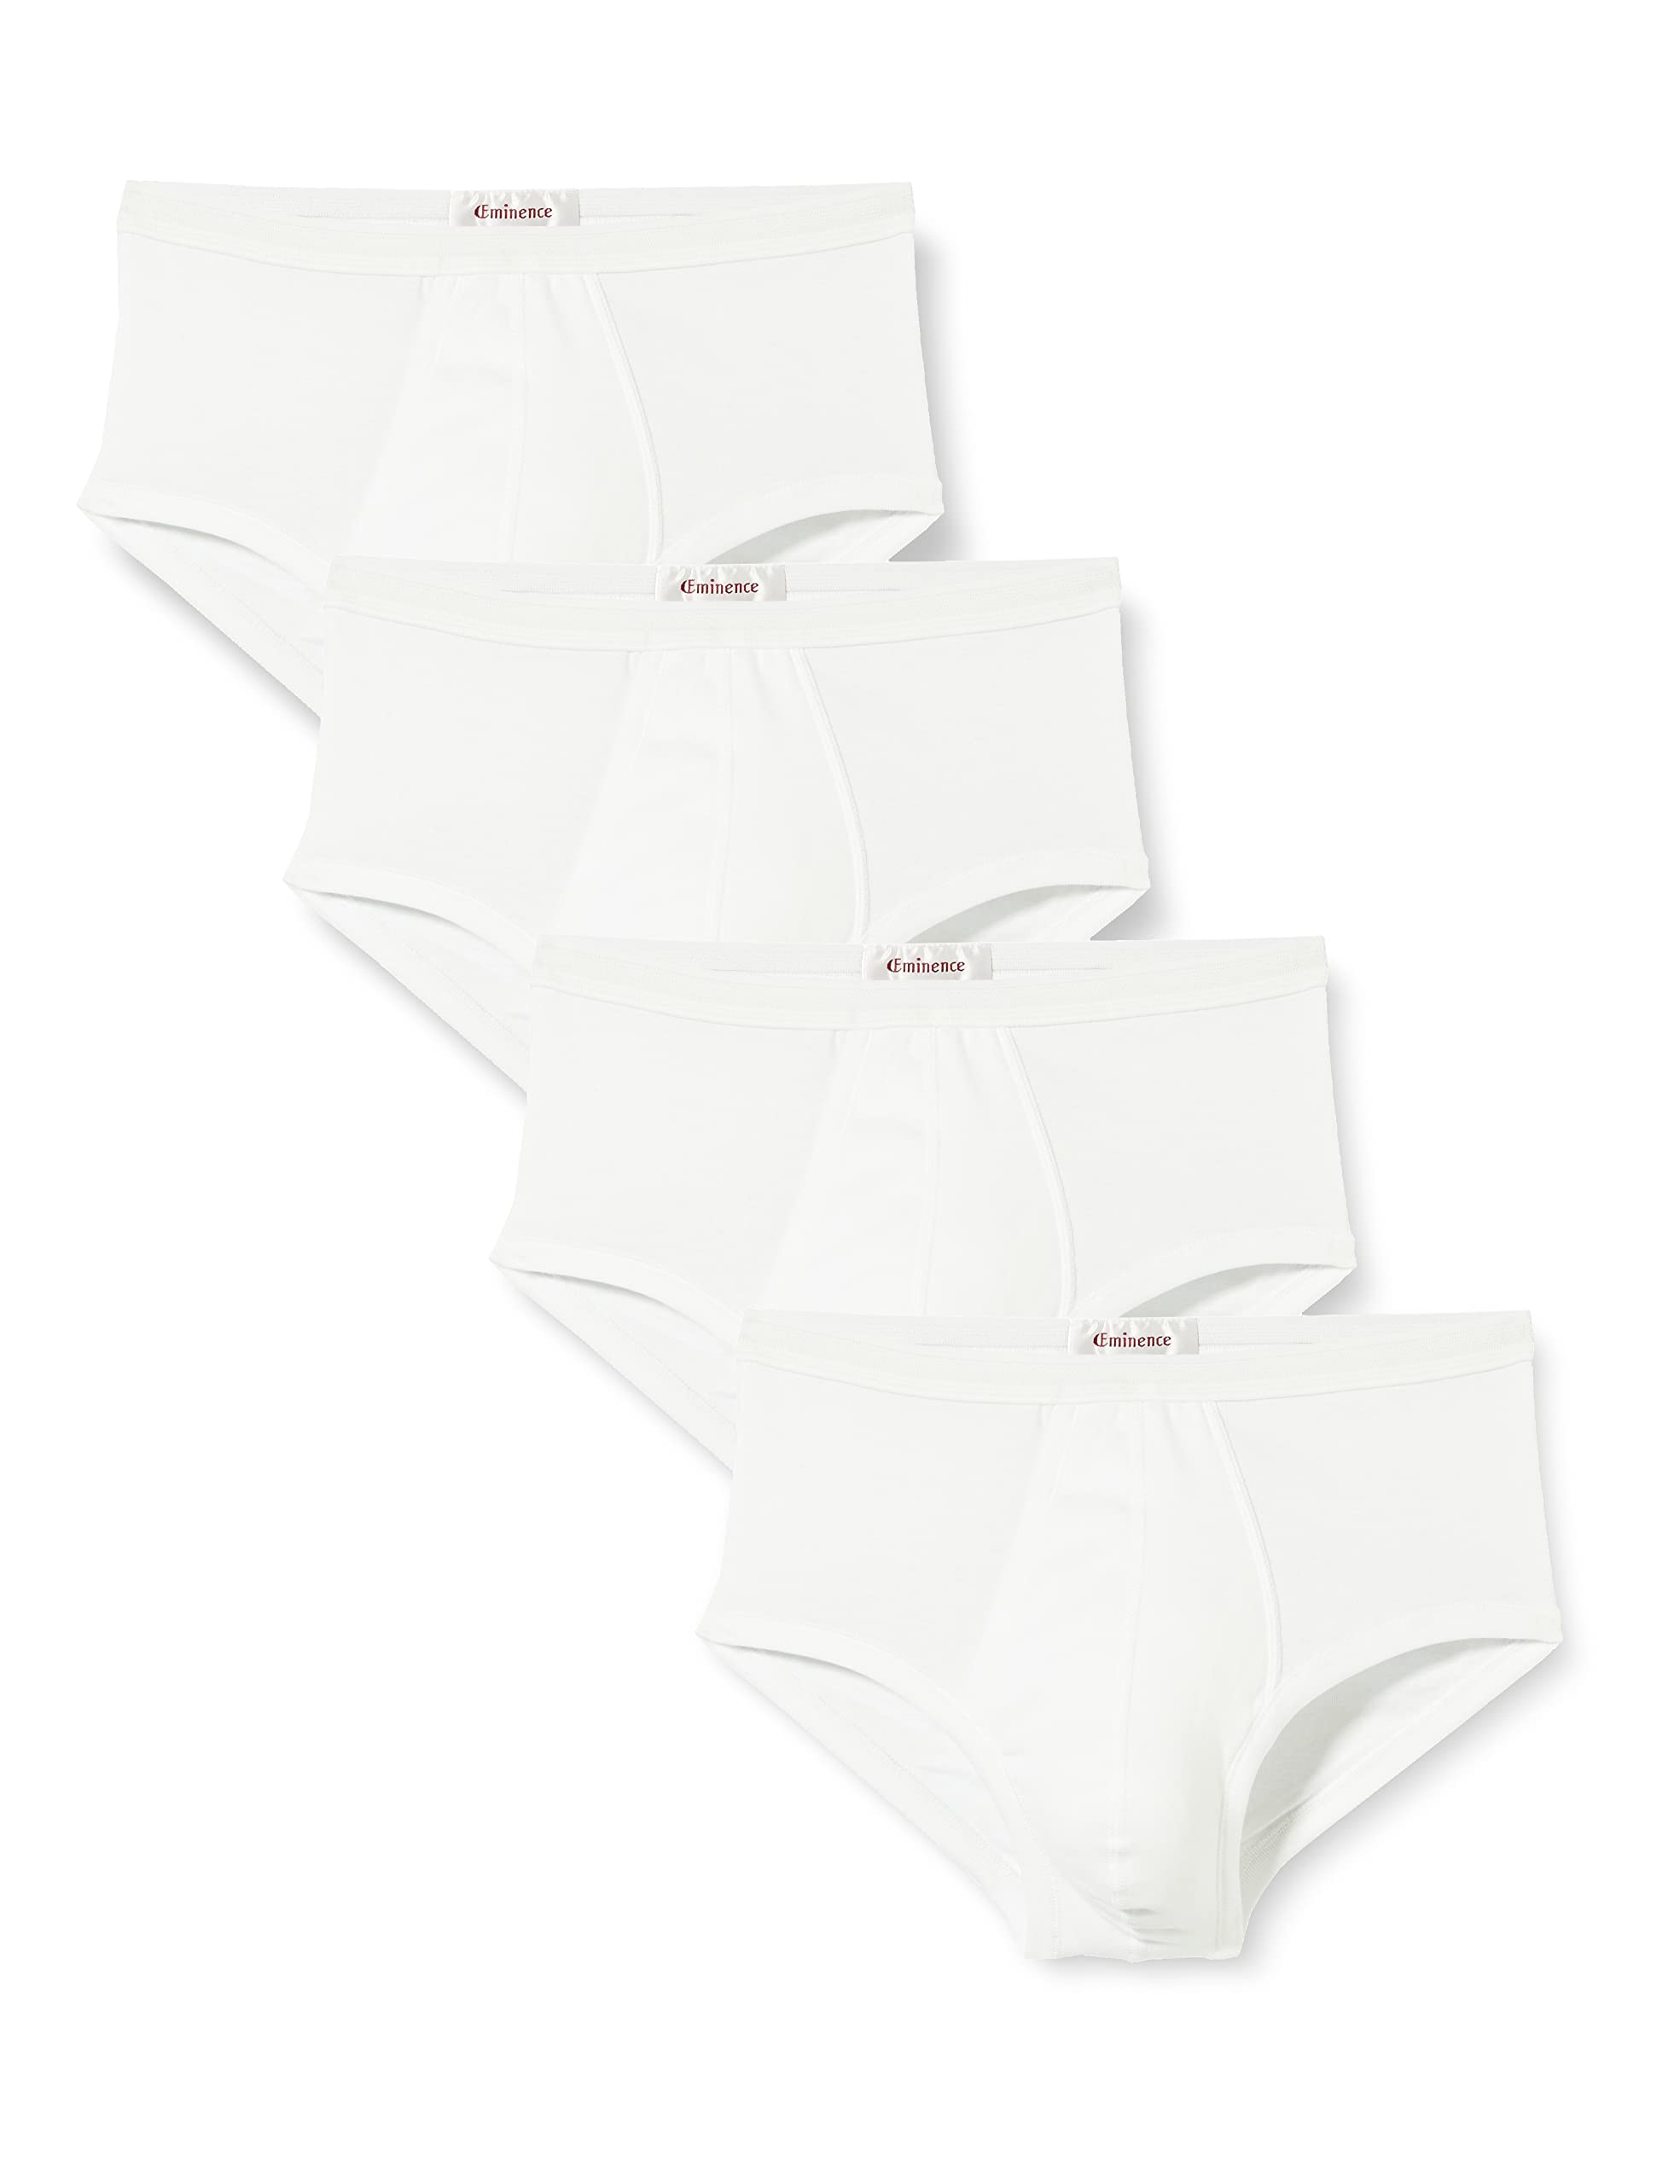 Eminence Herren Promo Classiques Unterhose, Weiß (Blanc/Blanc/Blanc/Blanc 0001), X-Large (Herstellergröße: 5) (4er Pack)